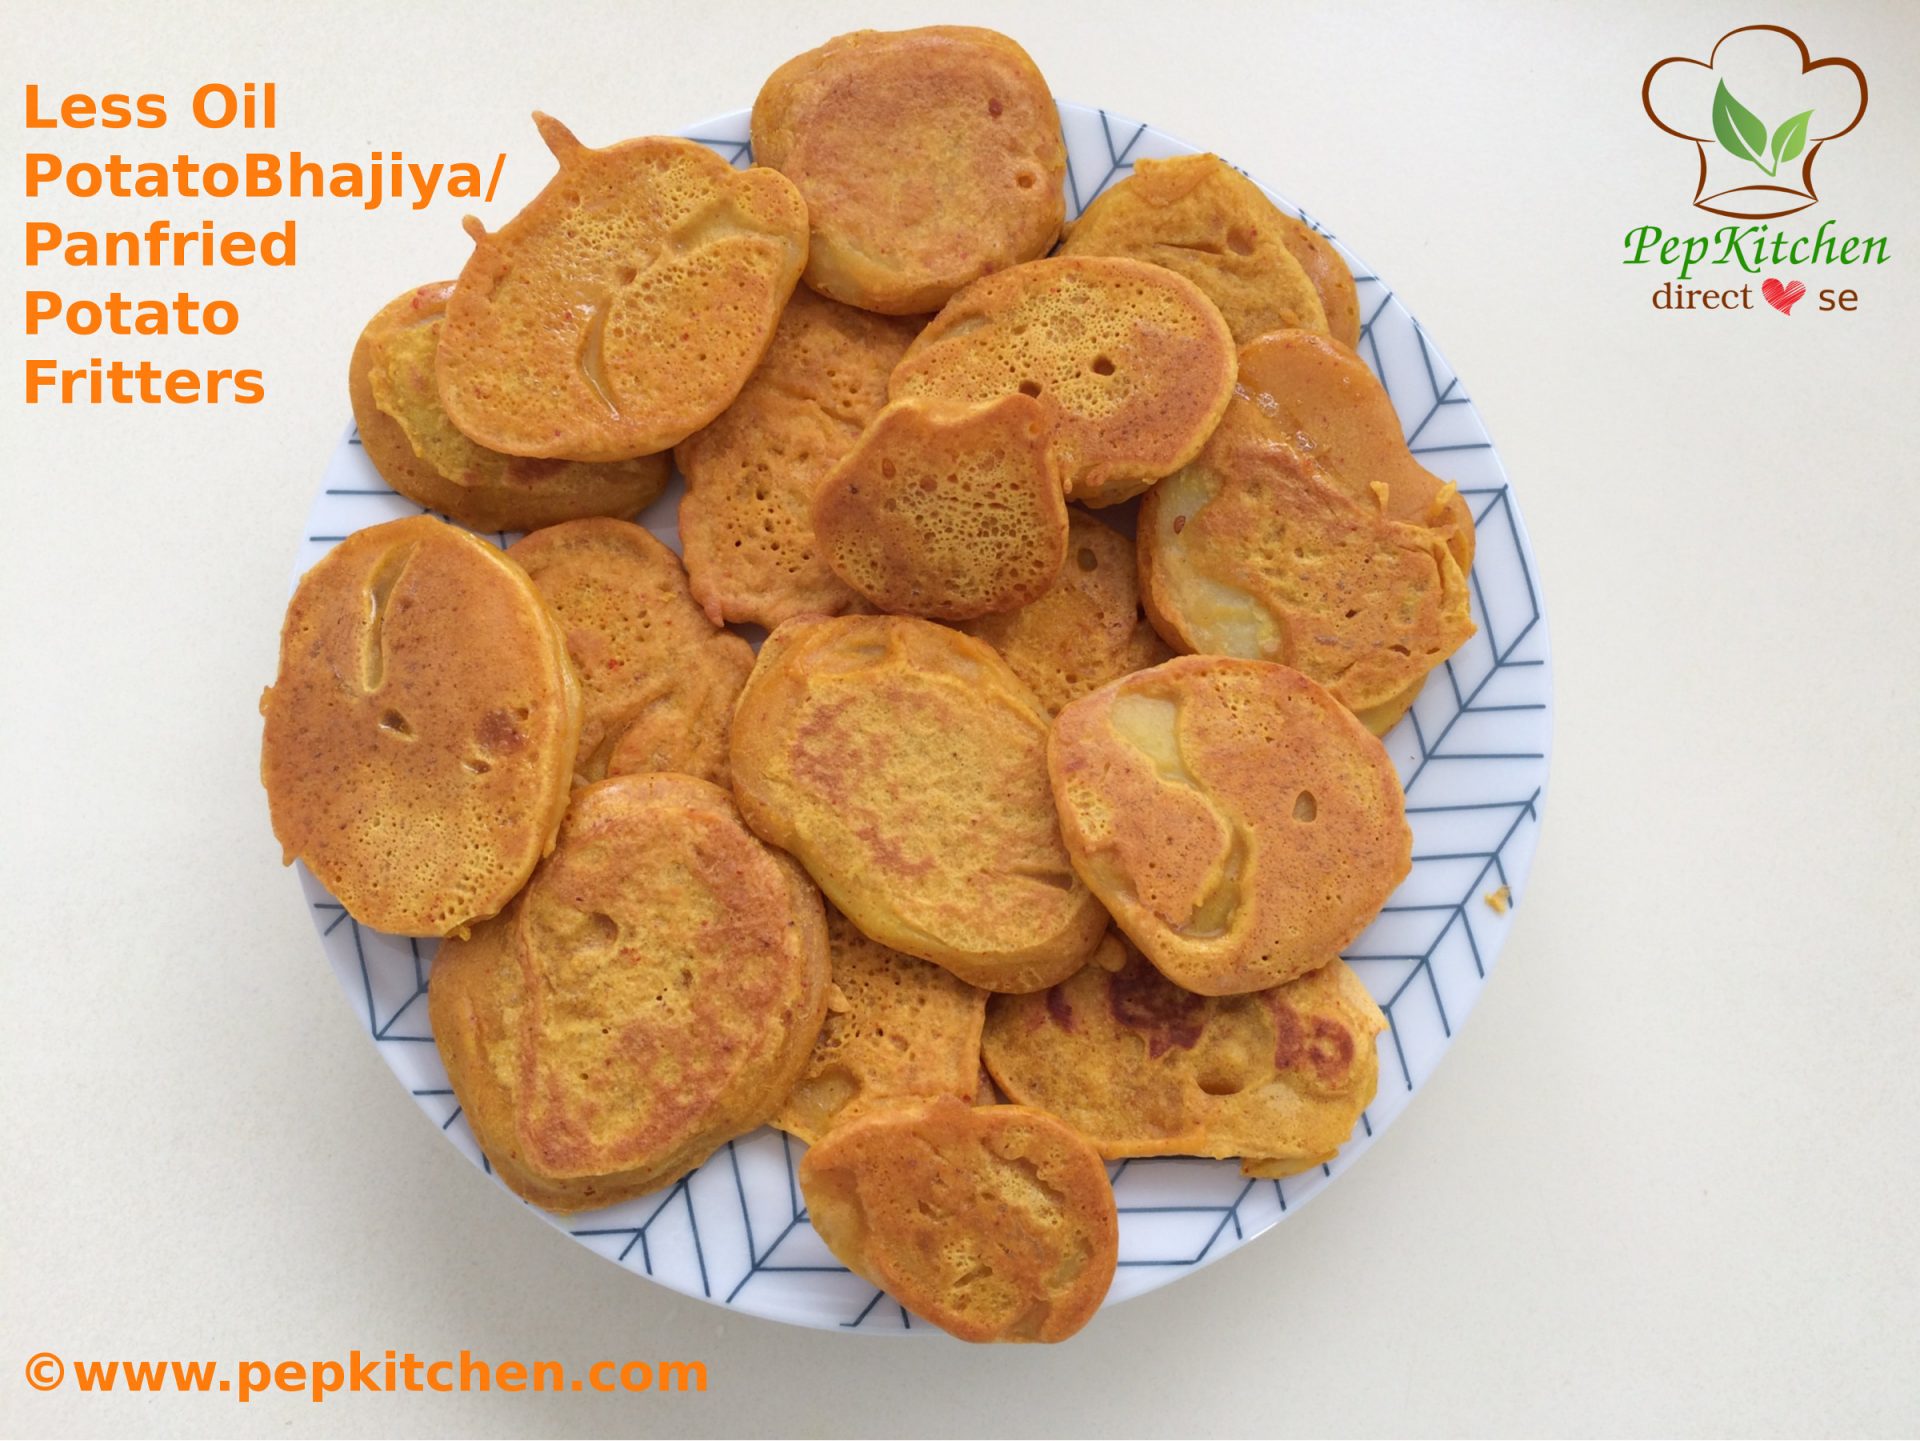 Less Oil Potato Bhajiya/ Pan fried Potato Fritters